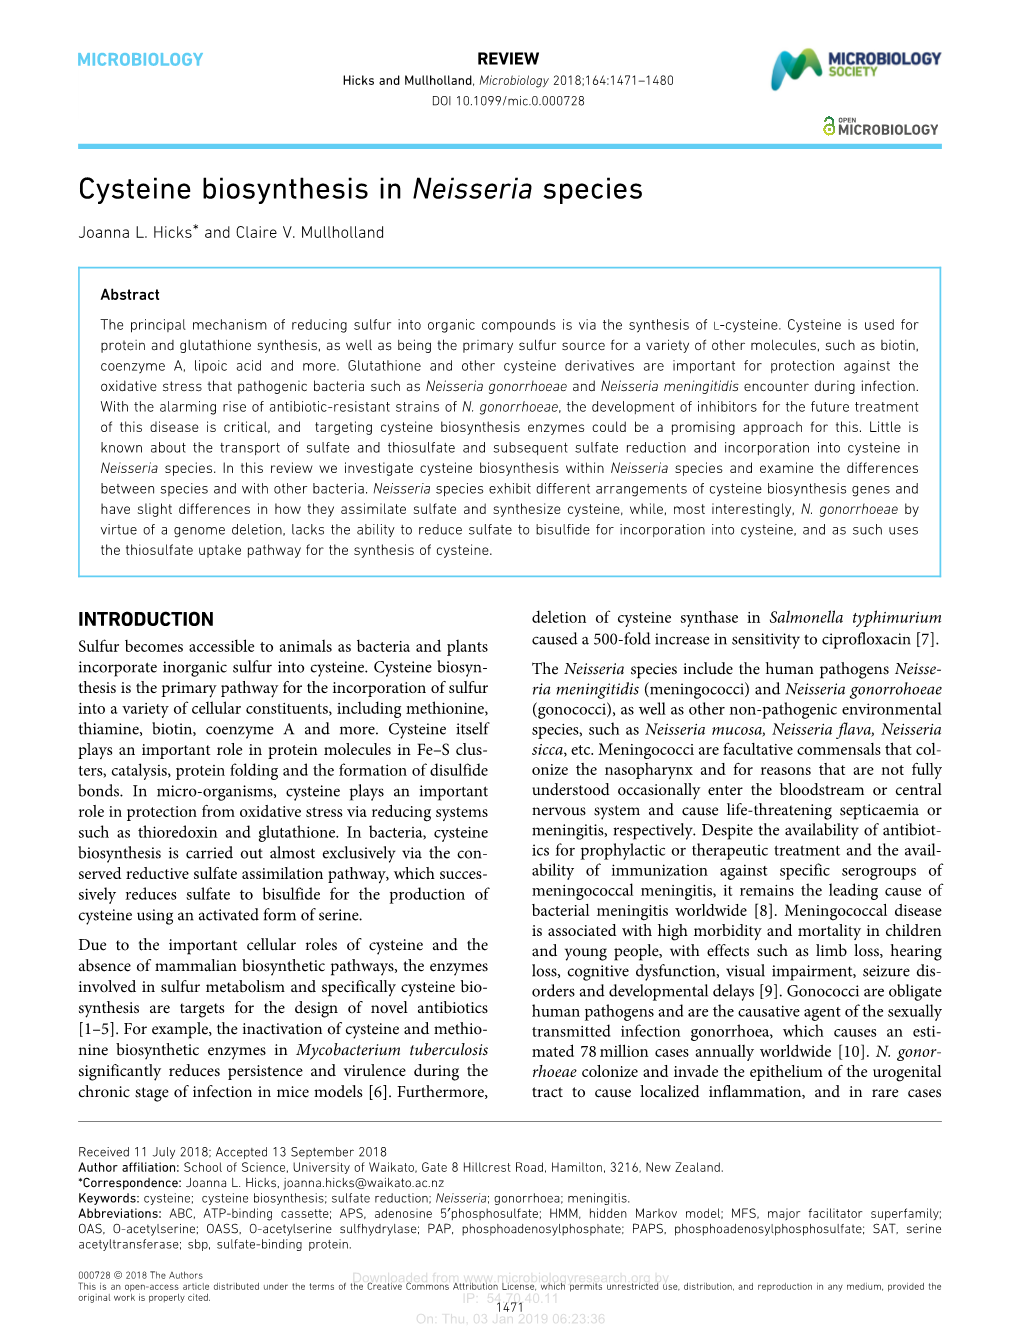 Cysteine Biosynthesis in Neisseria Species